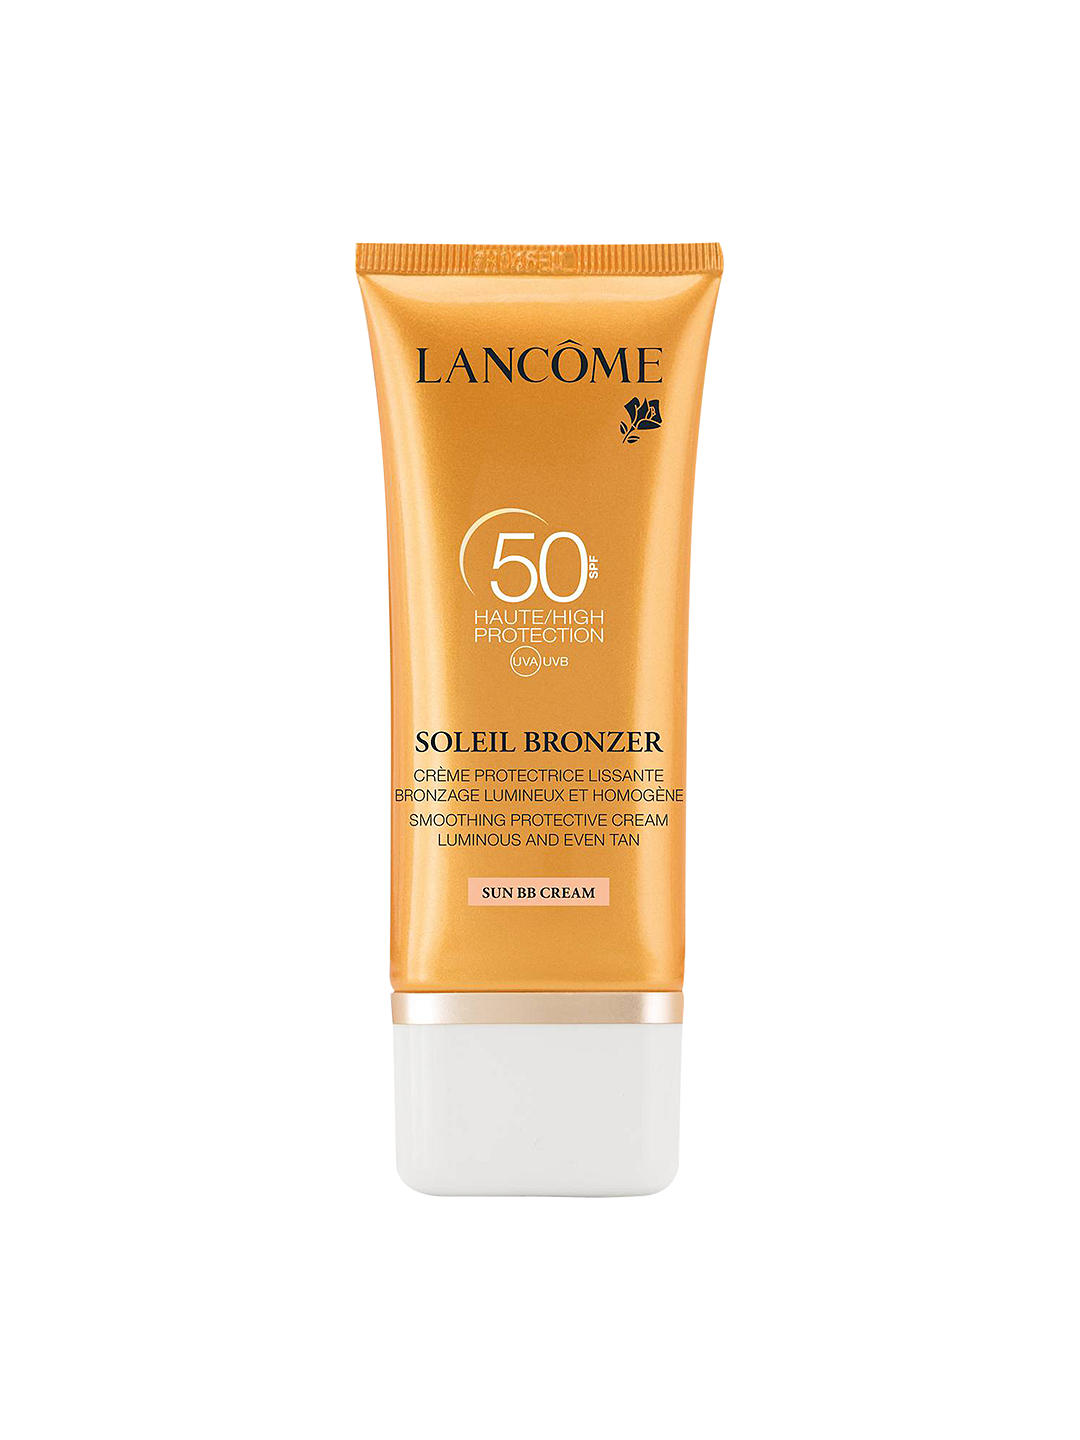 Lancôme Soleil Bronzer Cream, SPF 50 1